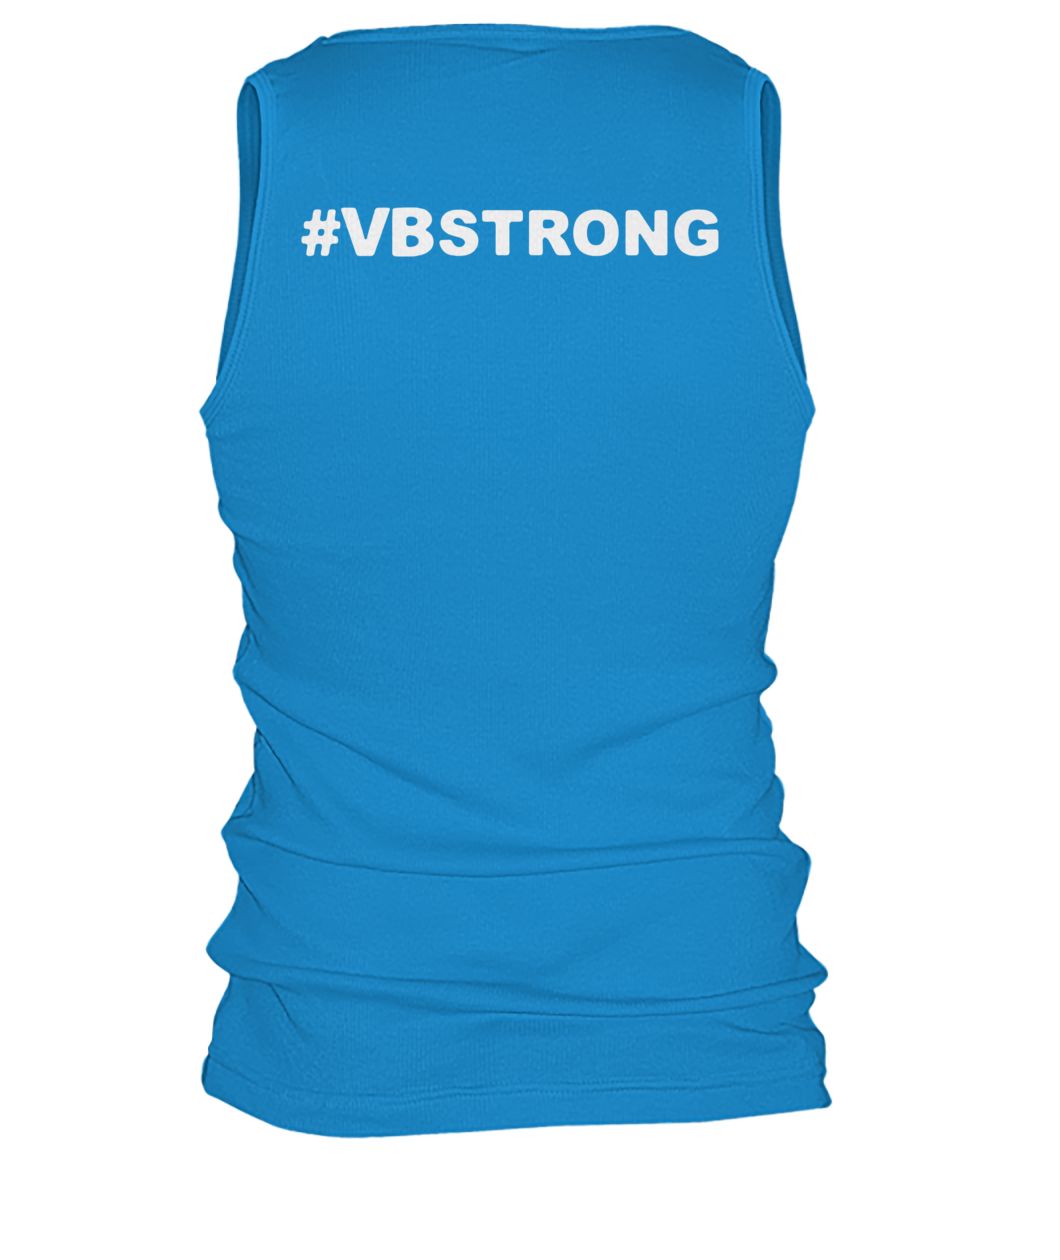 VB strong virginia beach strong #vbstrong men's tank top